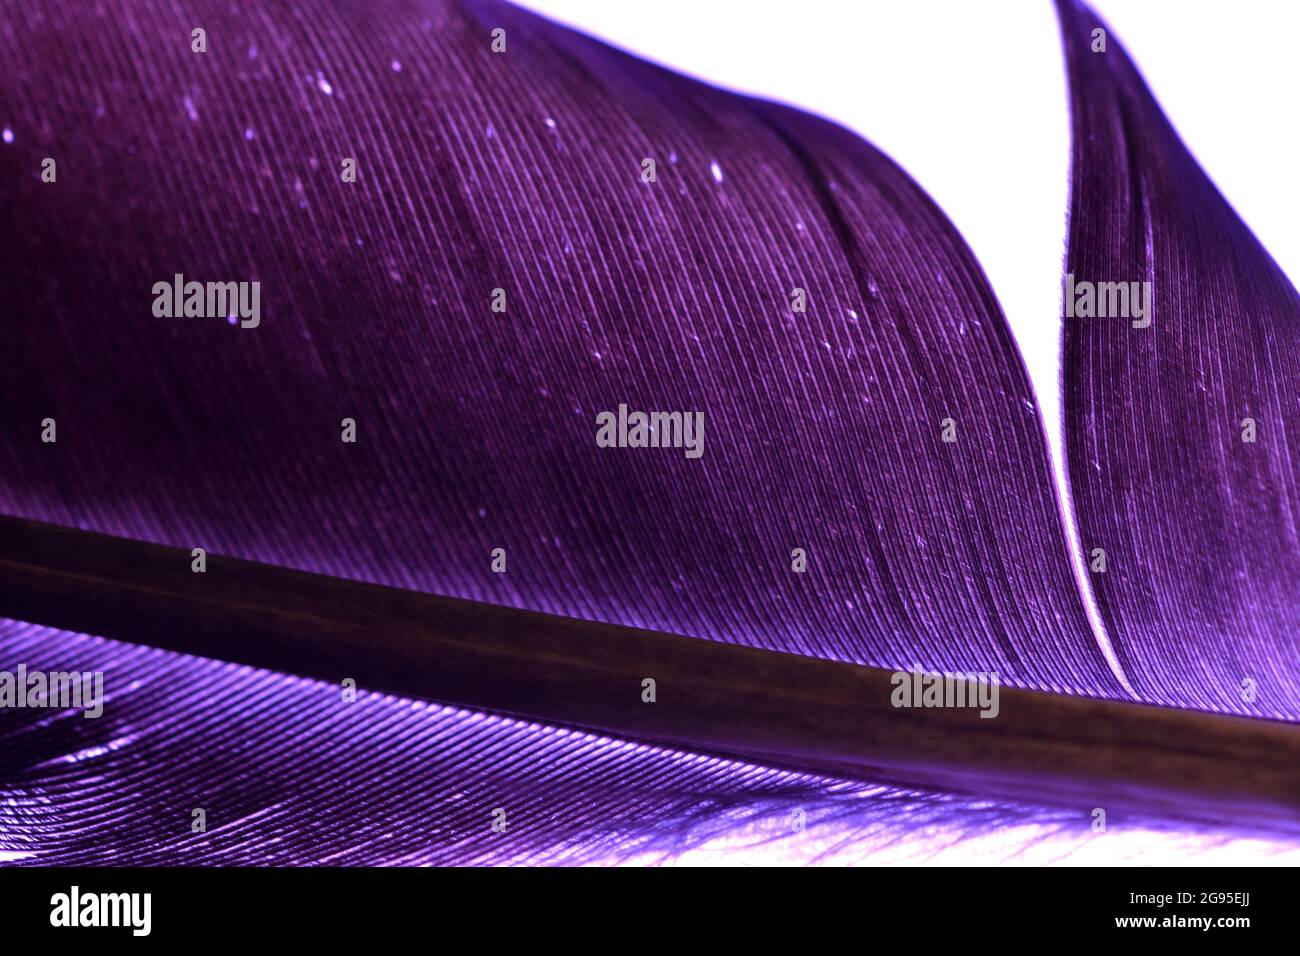 Gros plan d'une plume d'oie du Canada (Branta canadensis) rétro-éclairée à l'aide d'un fond violet montrant une ailette de plumes et le motif de la plume. Banque D'Images